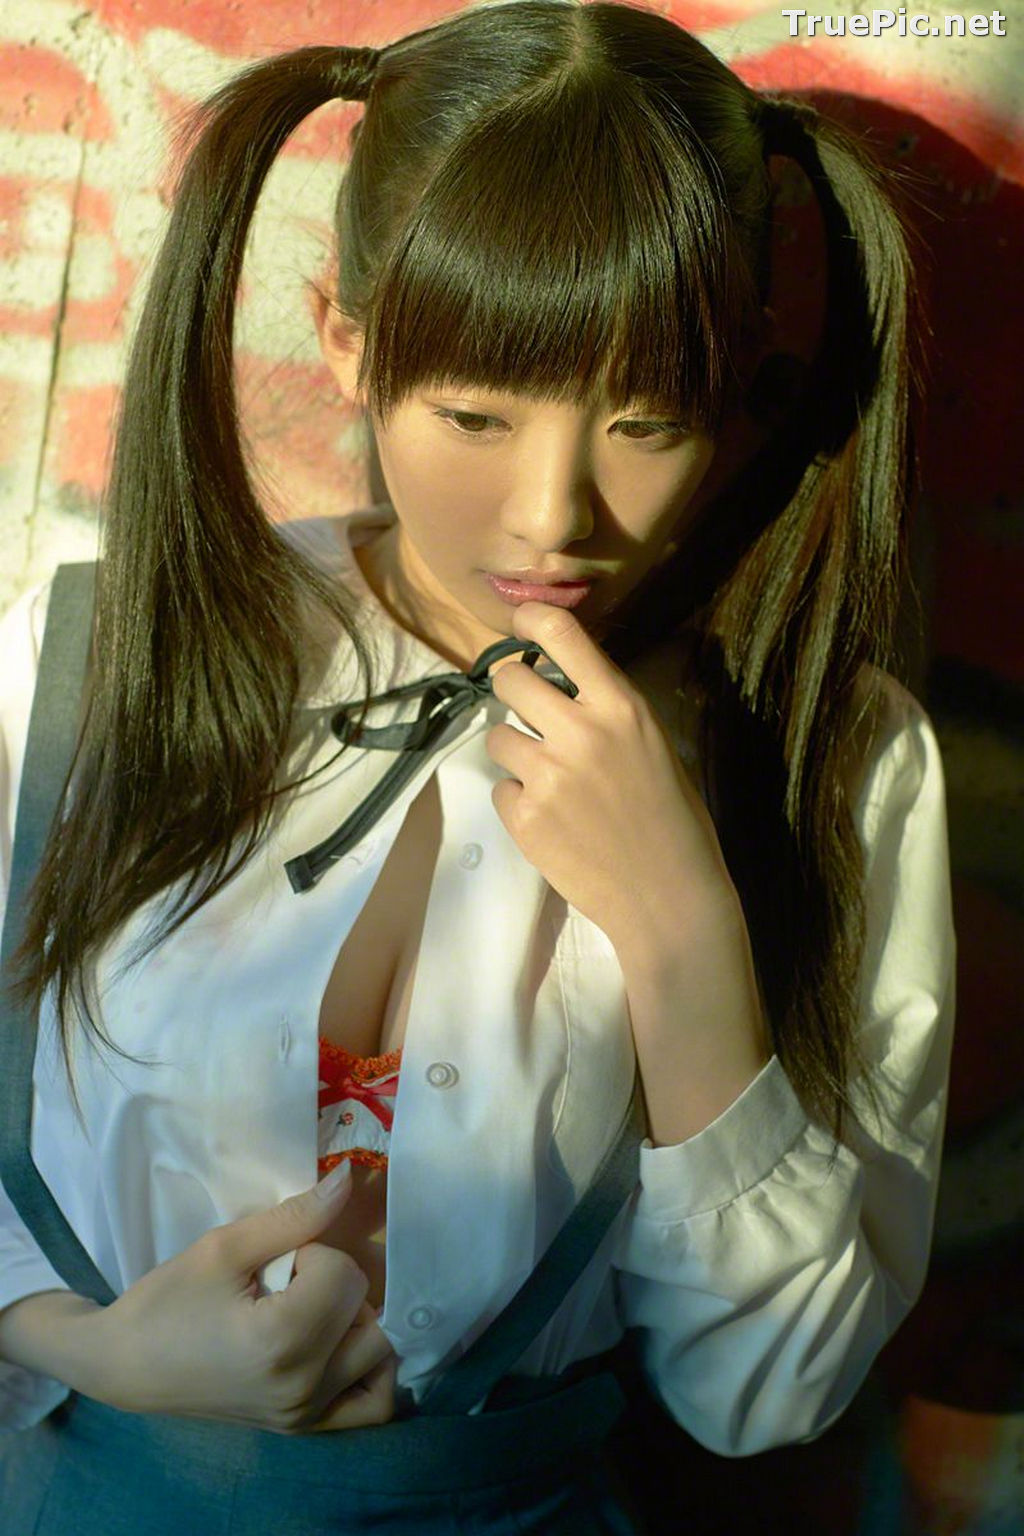 Image Wanibooks No.133 - Japanese Model and Singer - Hikari Shiina - TruePic.net - Picture-20